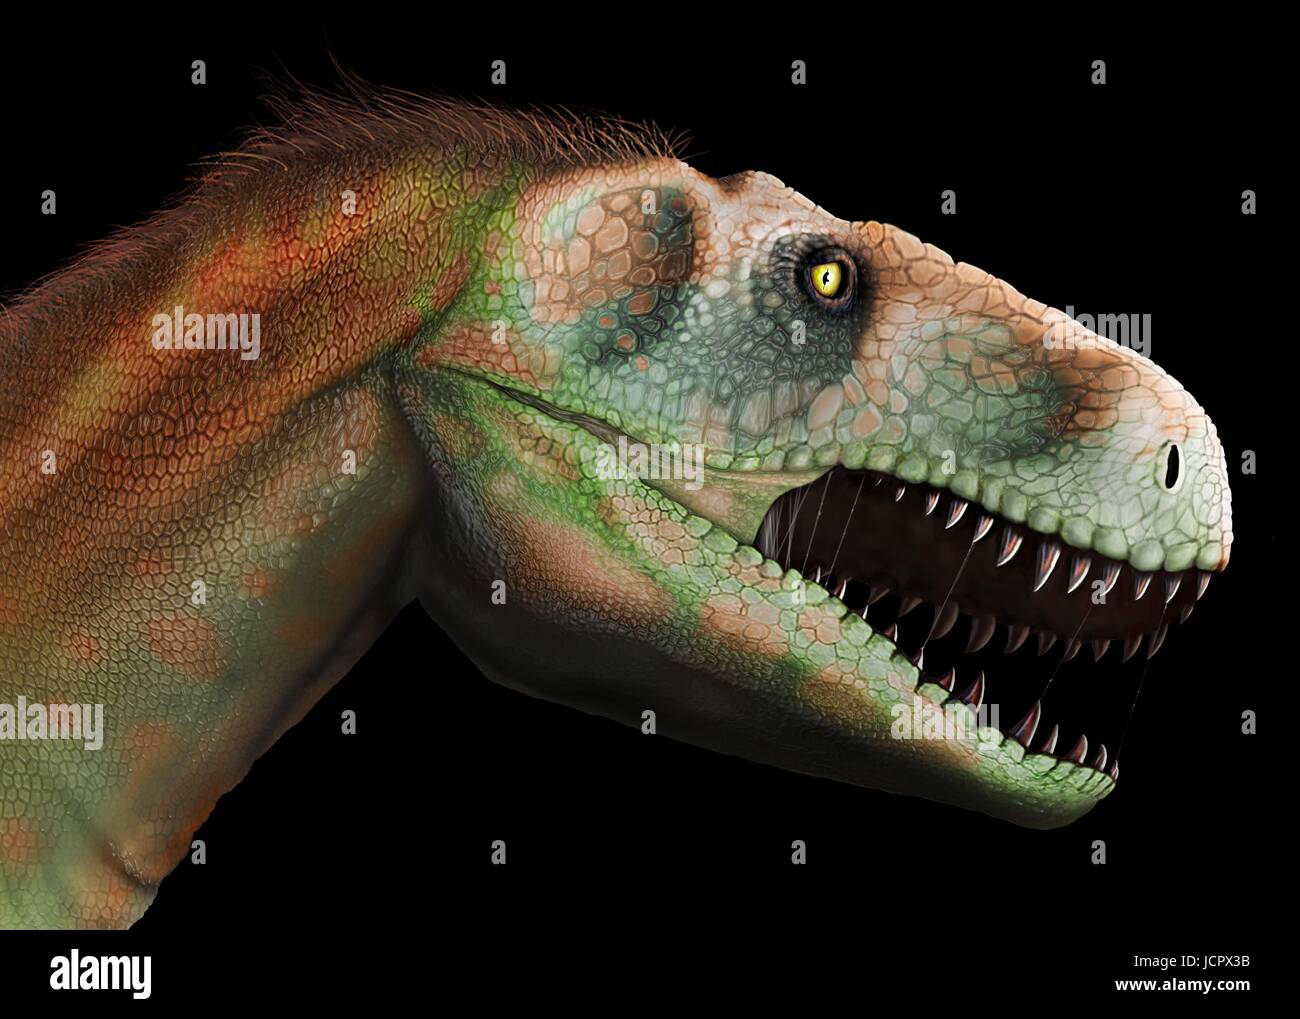 Kopf-Studie Megalosaurus. Megalosaurus ist Gattung ausgestorbener Fleisch fressenden Dinosaurier, Theropoden, vom mittleren Jura-Zeit in Eartha€™ s Geschichte, 166 Millionen Jahren. Es lebte in der nun südlichen England.die ersten Dinosaurier Fossil jemals gefunden, längst 1676, wahrscheinlich Fragment Oberschenkelknochen war, die Megalosaurus.This gehörte, Tier war mittlere Theropode, 6 bis 7 m lang mit einem Gewicht von etwa einer Tonne. Modernes Verständnis ist, dass Megalosaurus in Daunenfedern, besonders entlang dem hinteren Bauch behandelt werden kann. Stockfoto